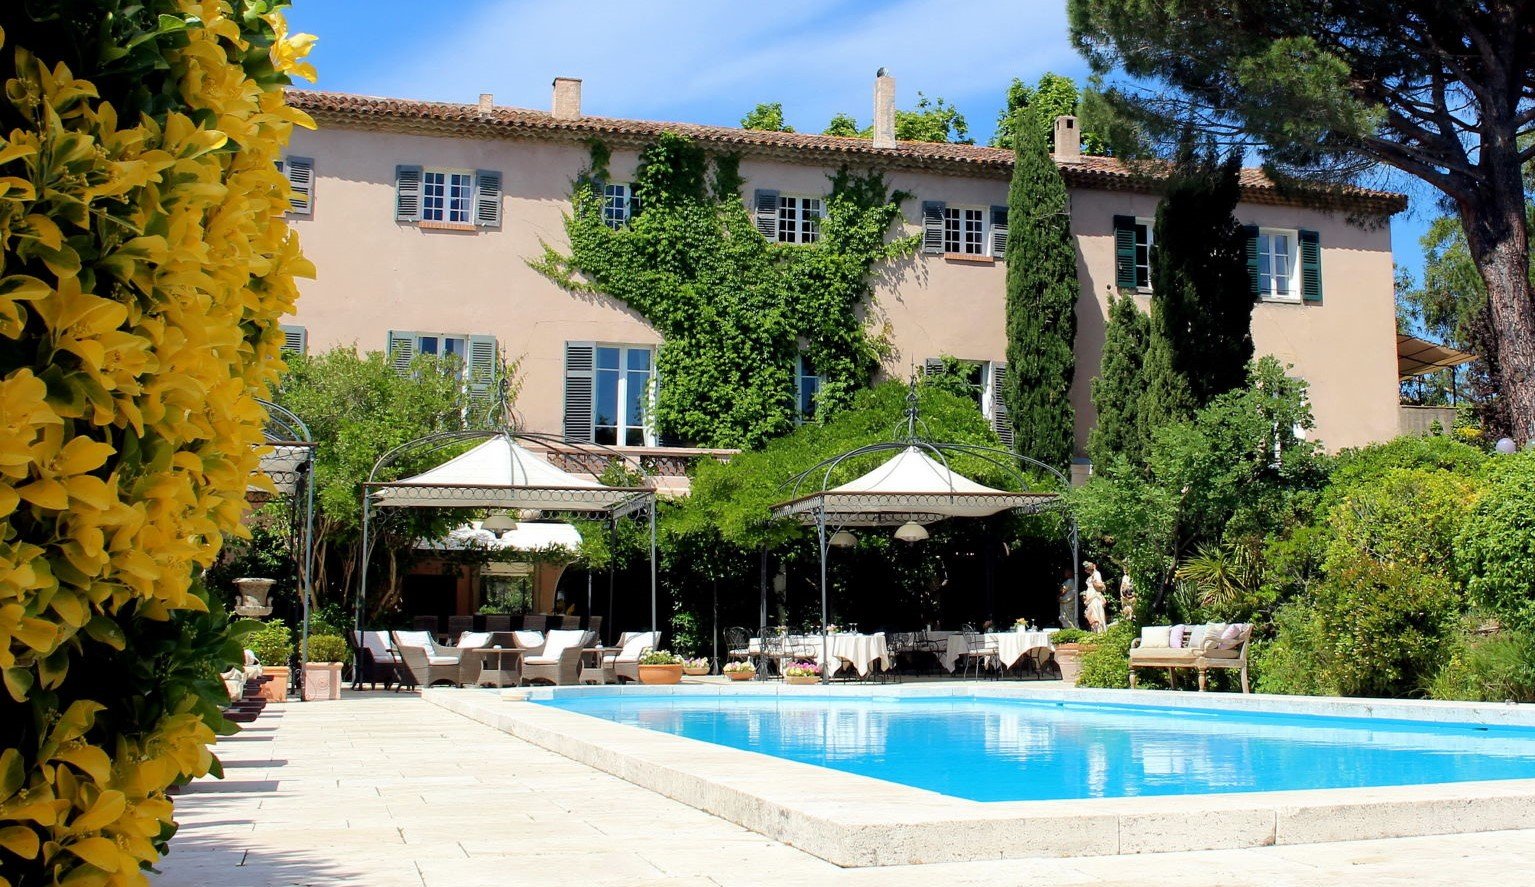 Luxury boutique hotel Mas de Chastelas 5 stars Saint-Tropez France pool